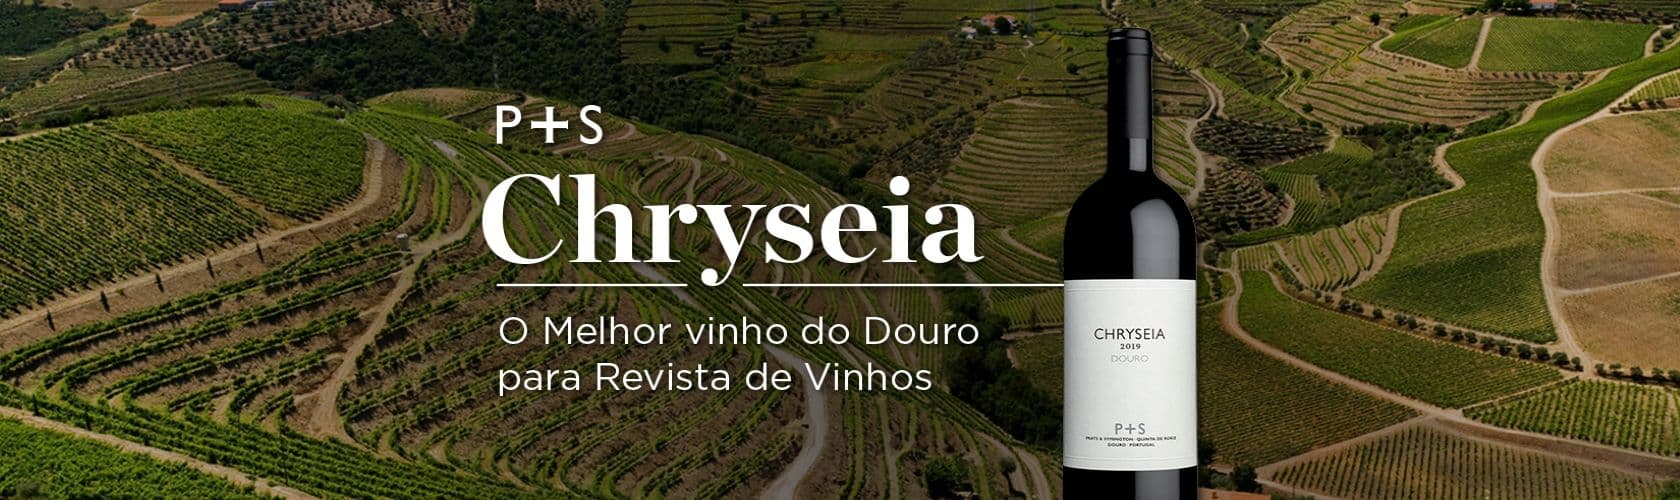 Chryseia é eleito o melhor vinho do Douro